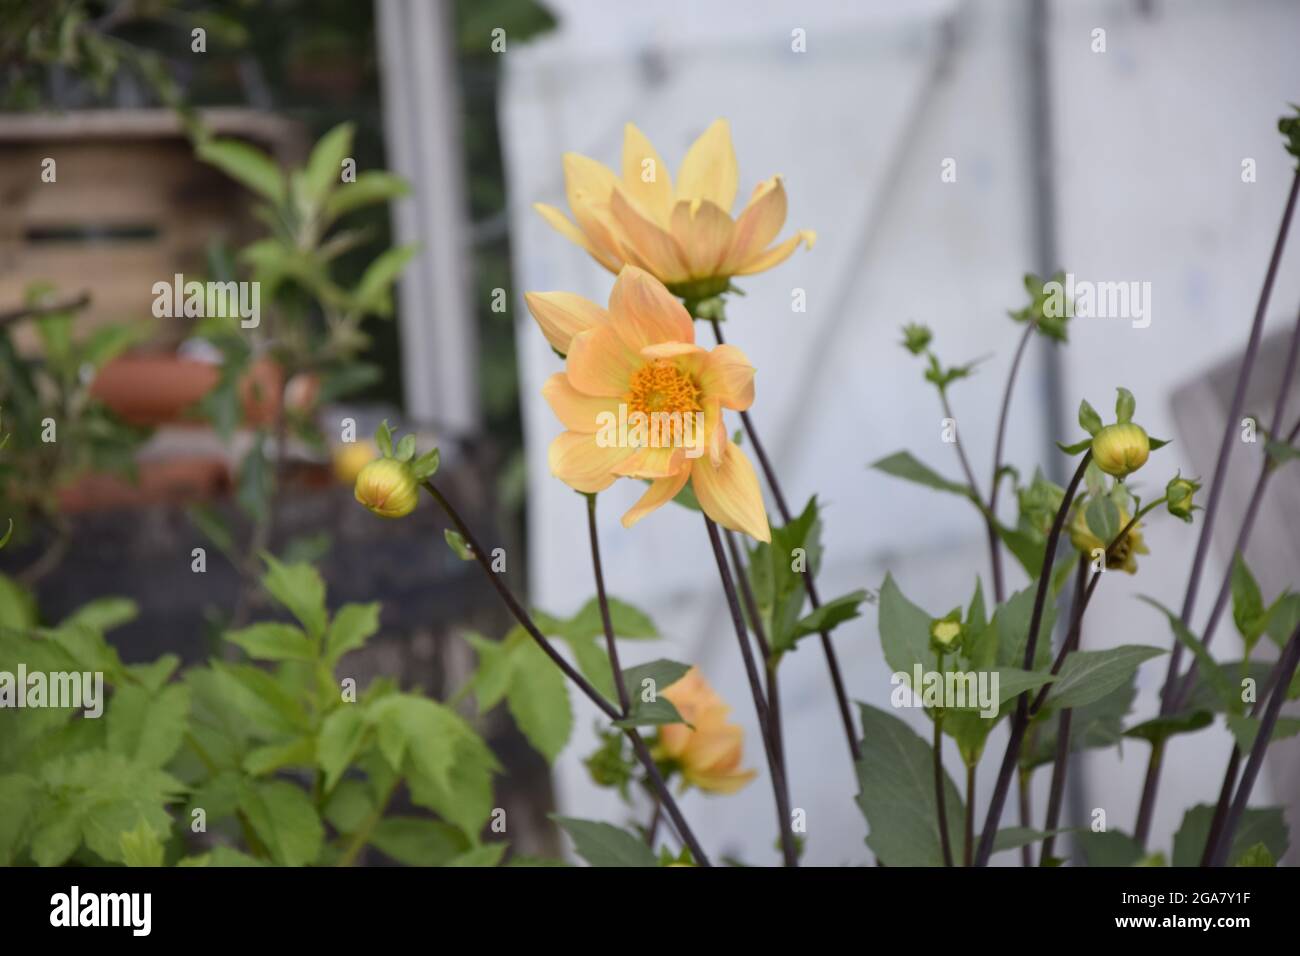 DIEREN, PAESI BASSI - 16 aprile 2021: Un colpo dei fiori gialli lunghi bei che crescono a Dieren, Paesi Bassi. Foto Stock